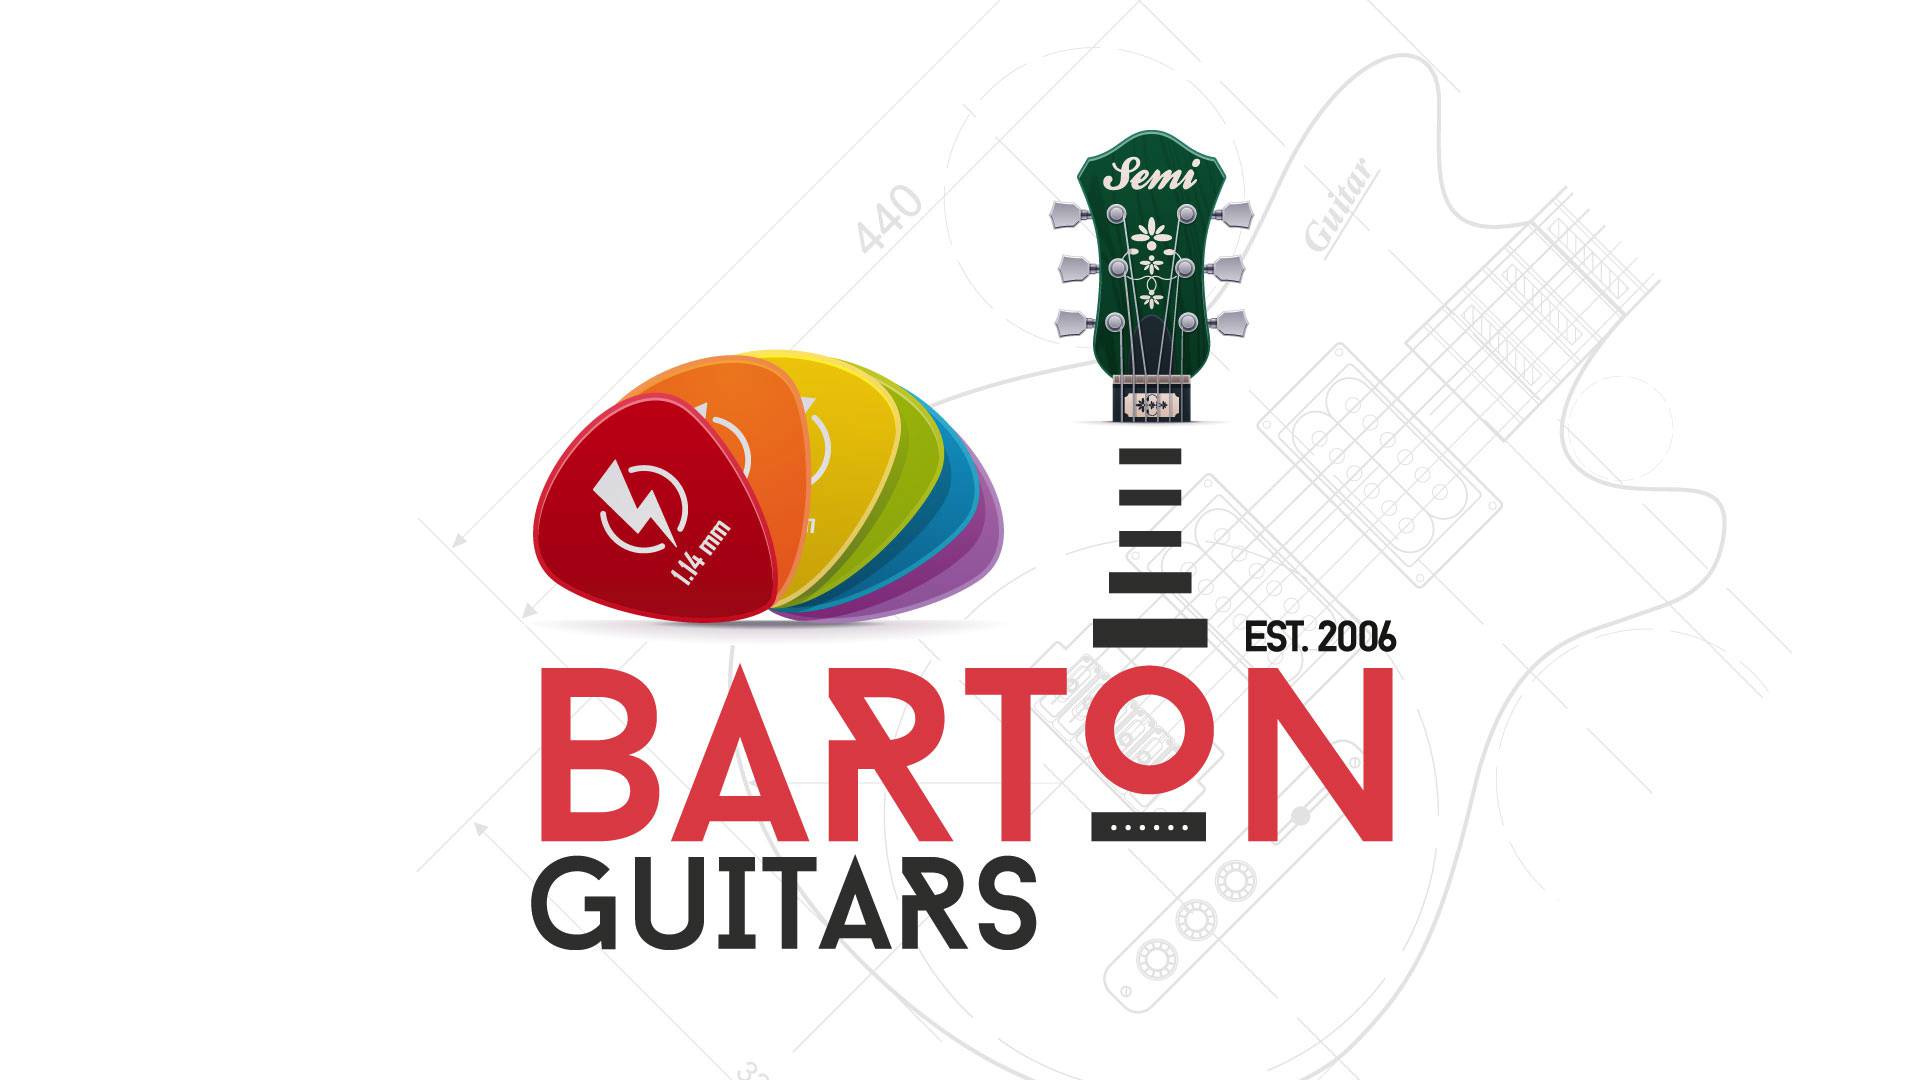 Who are barton guitars